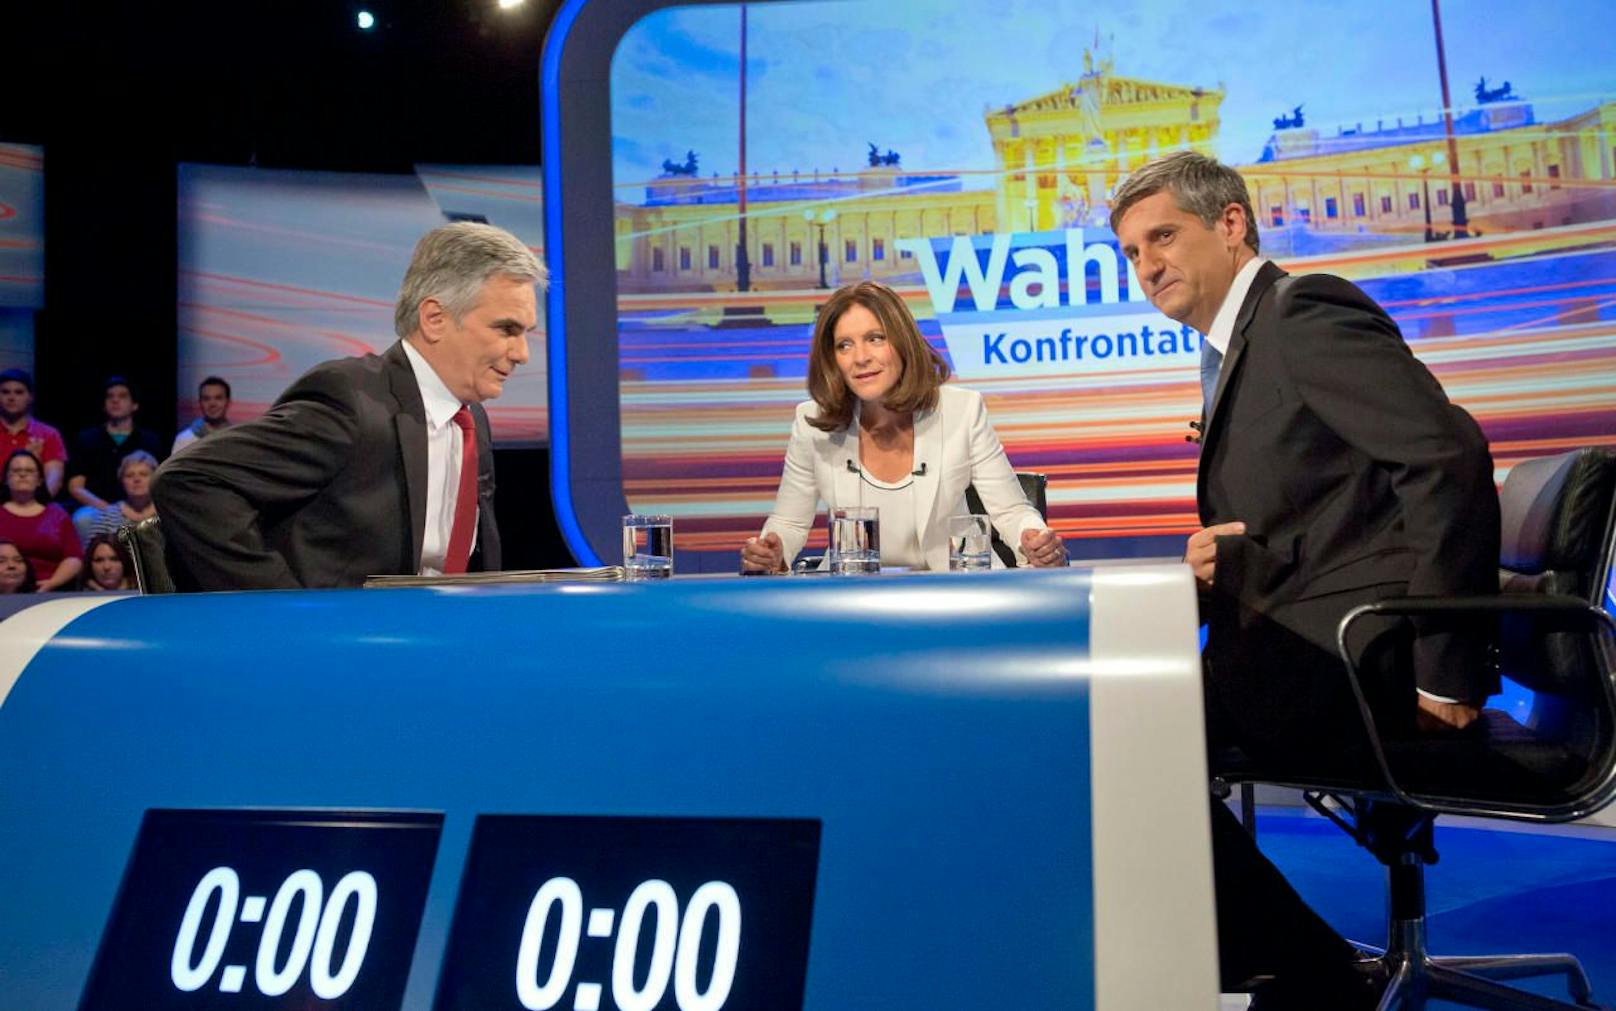 Alte Bekannte: ORF-Konfrontation mit den Spitzenkandidaten von ÖVP und SPÖ, Werner Faymann und Michael Spindelegger, zur Nationalratswahl 2013.